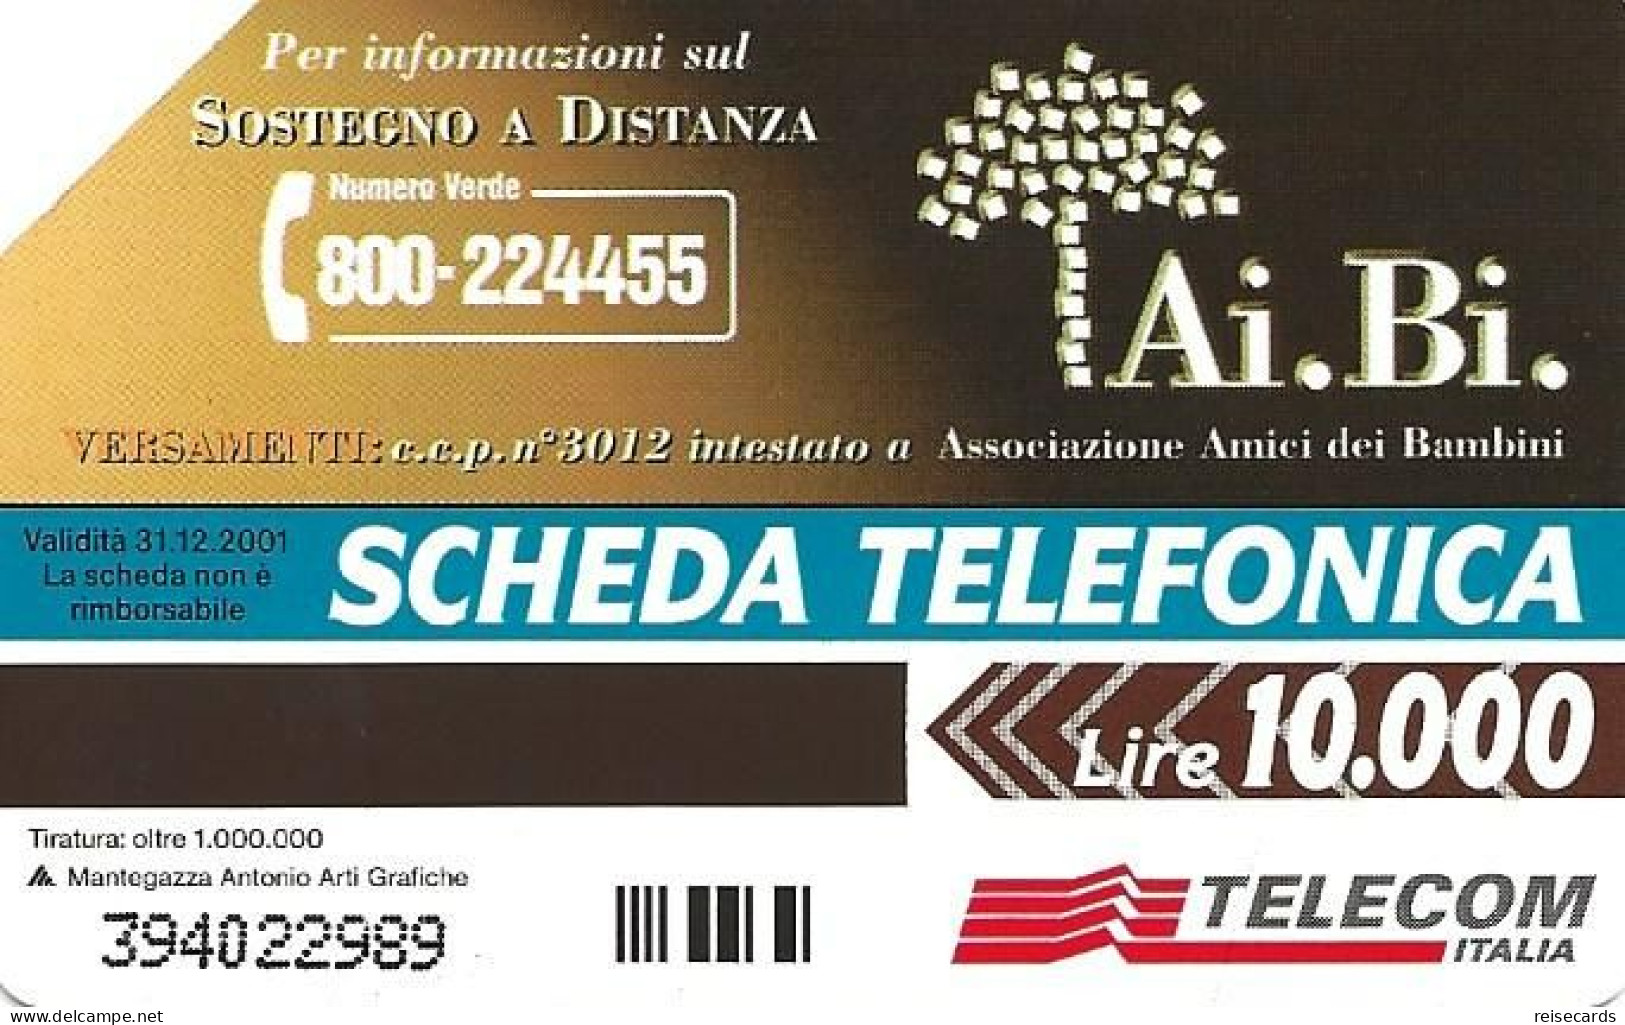 Italy: Telecom Italia - Ai.Bi. Associazione Amici Dei Bambini - Public Advertising